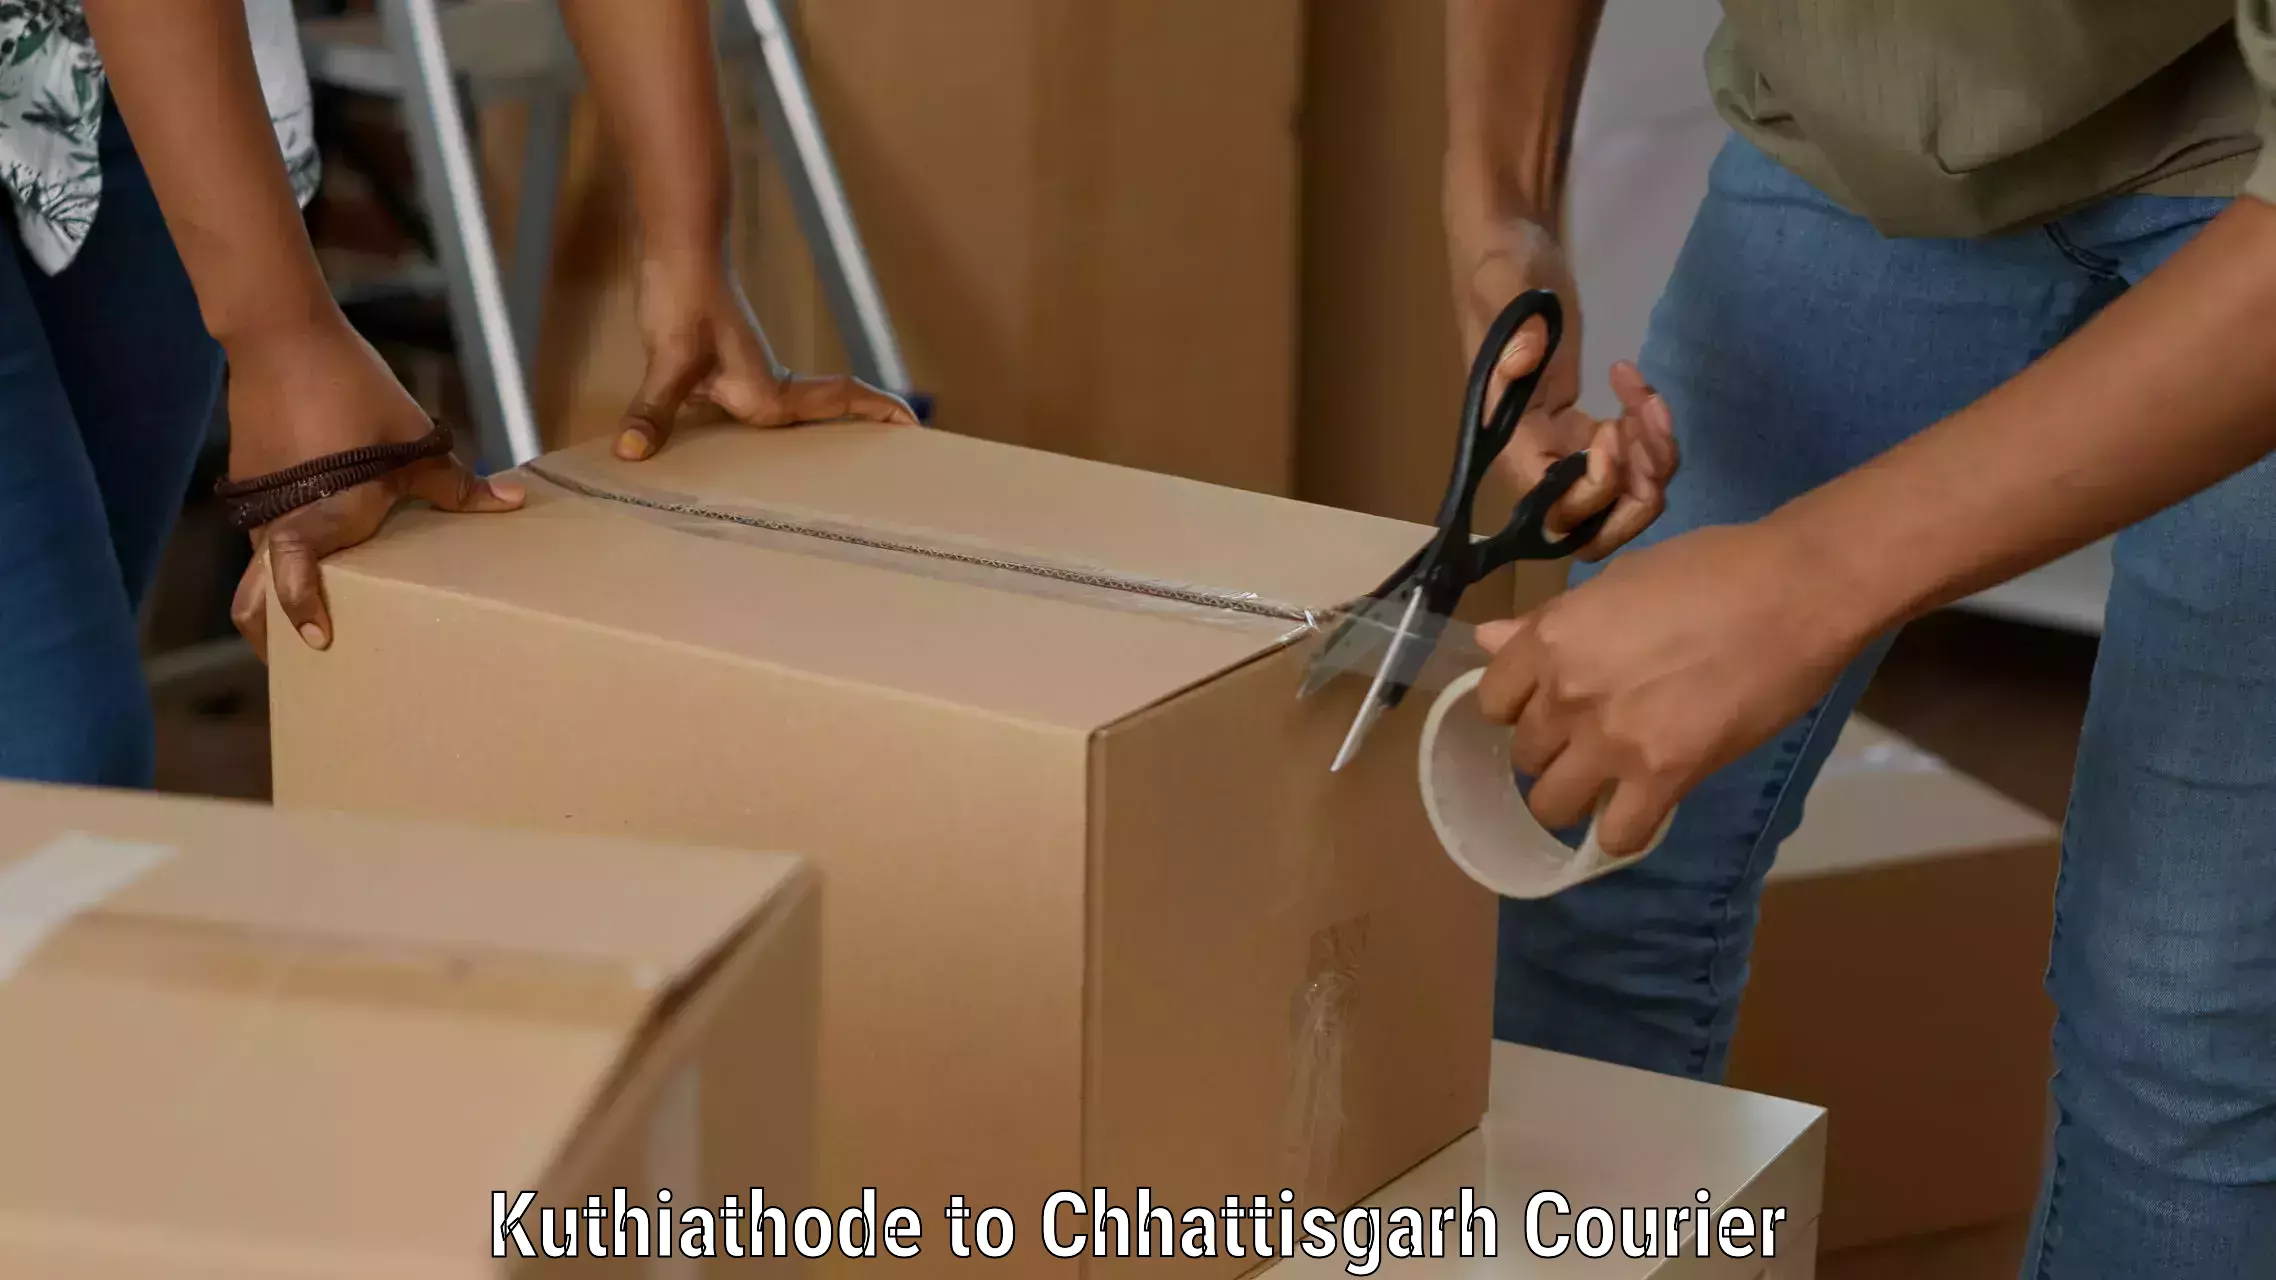 High-speed parcel service Kuthiathode to Bijapur Chhattisgarh